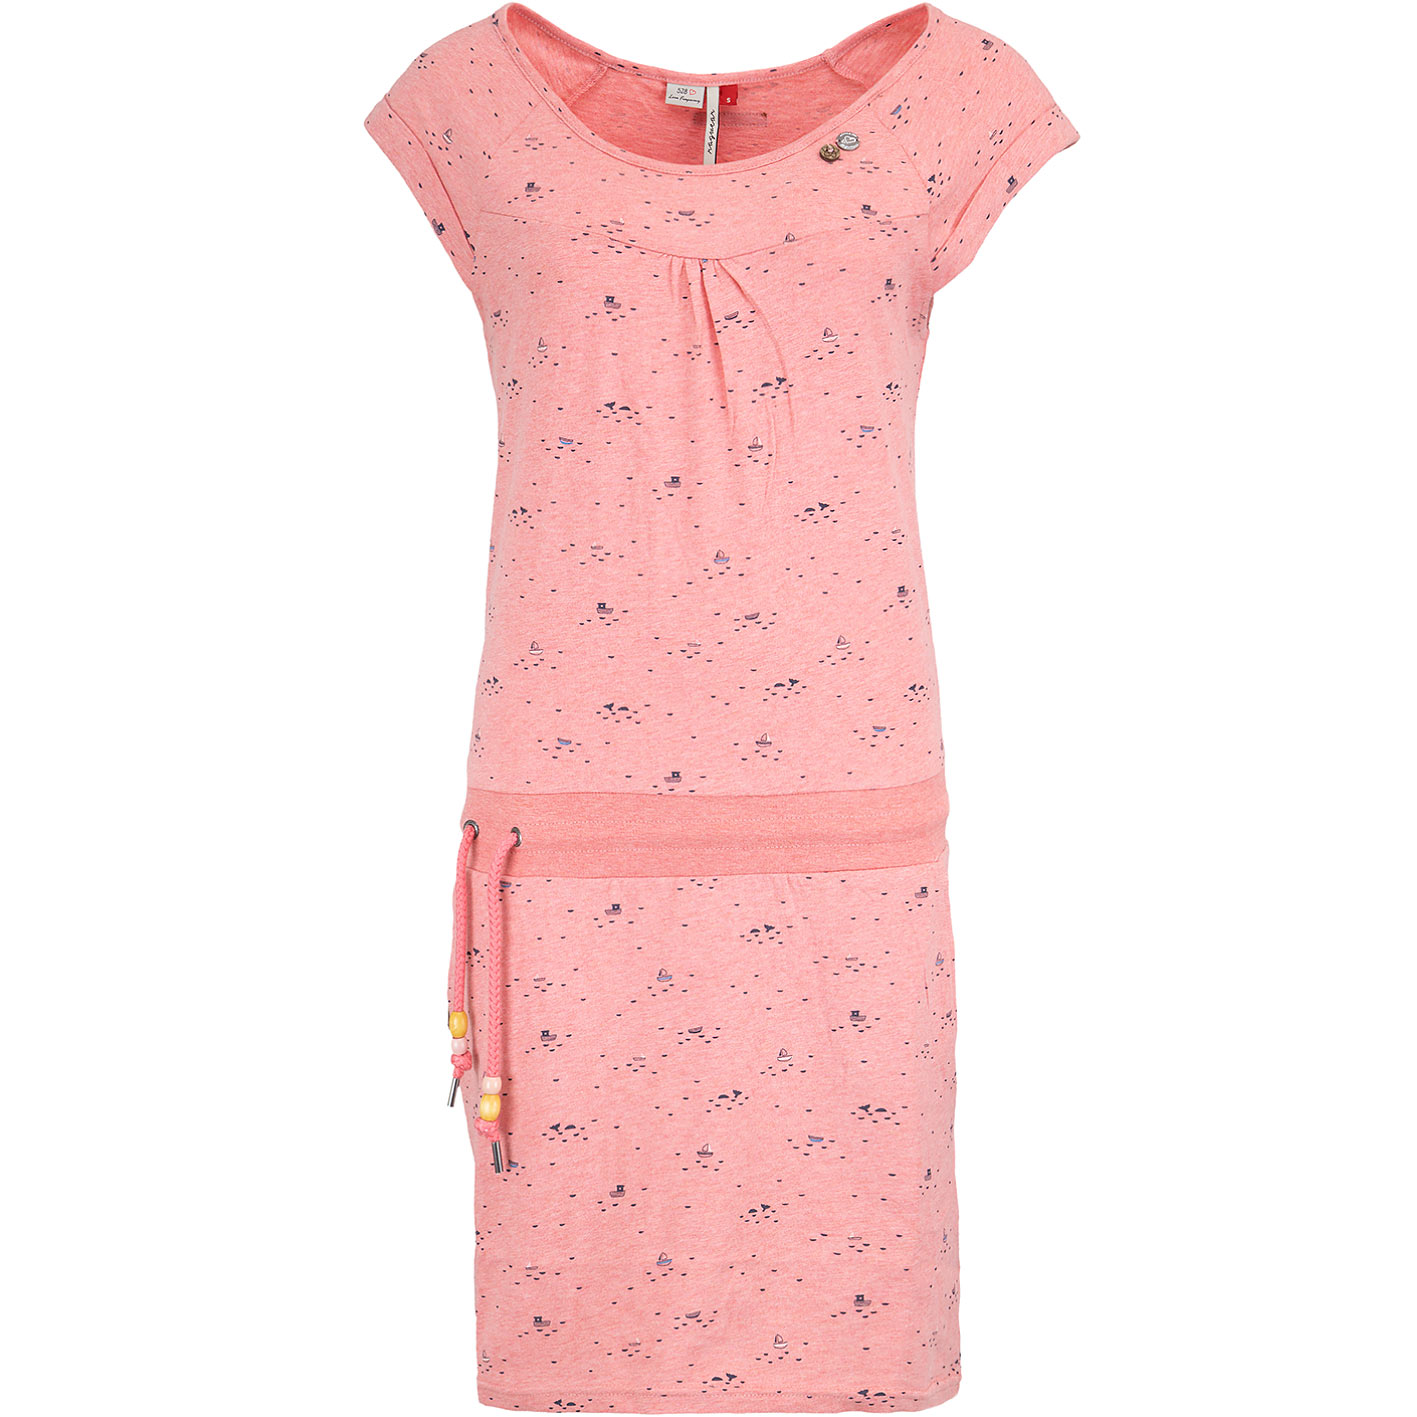 ☆ Ragwear Kleid Penelope rosa - hier bestellen!